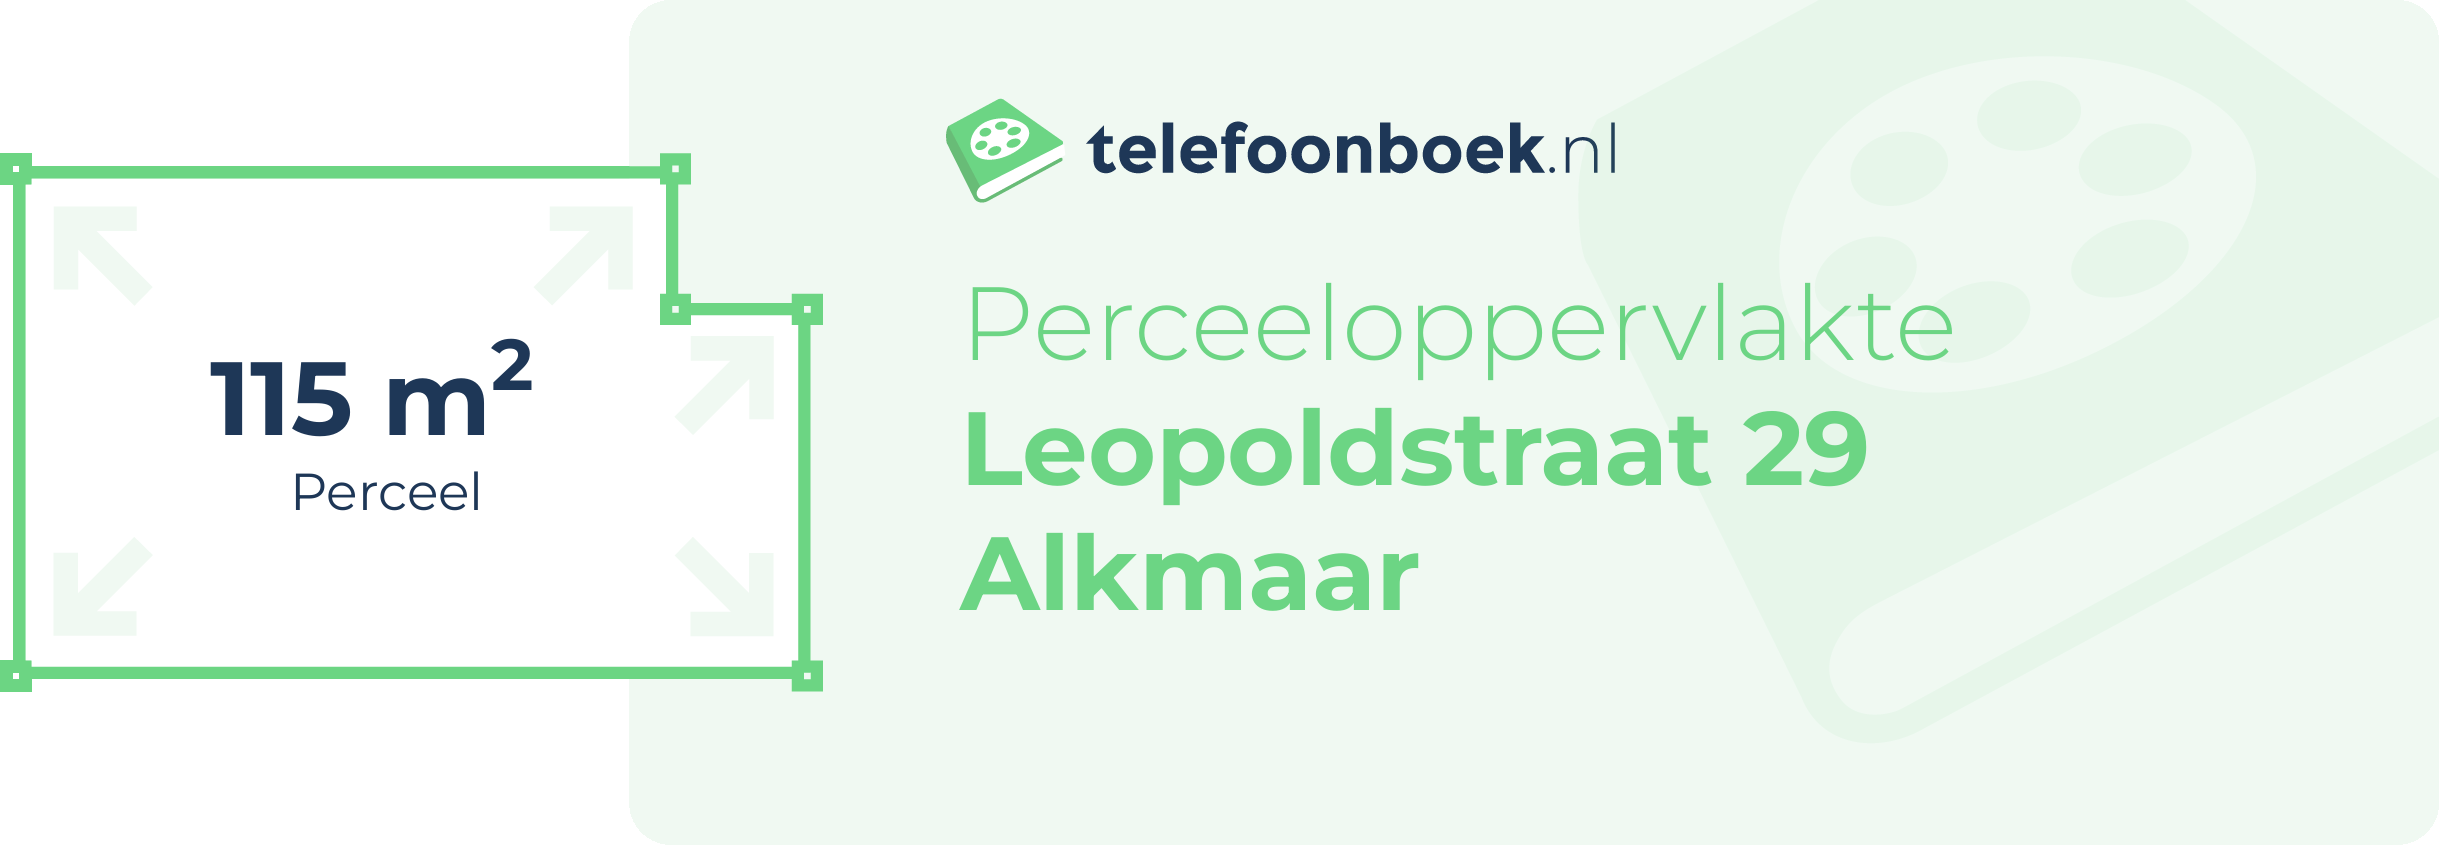 Perceeloppervlakte Leopoldstraat 29 Alkmaar